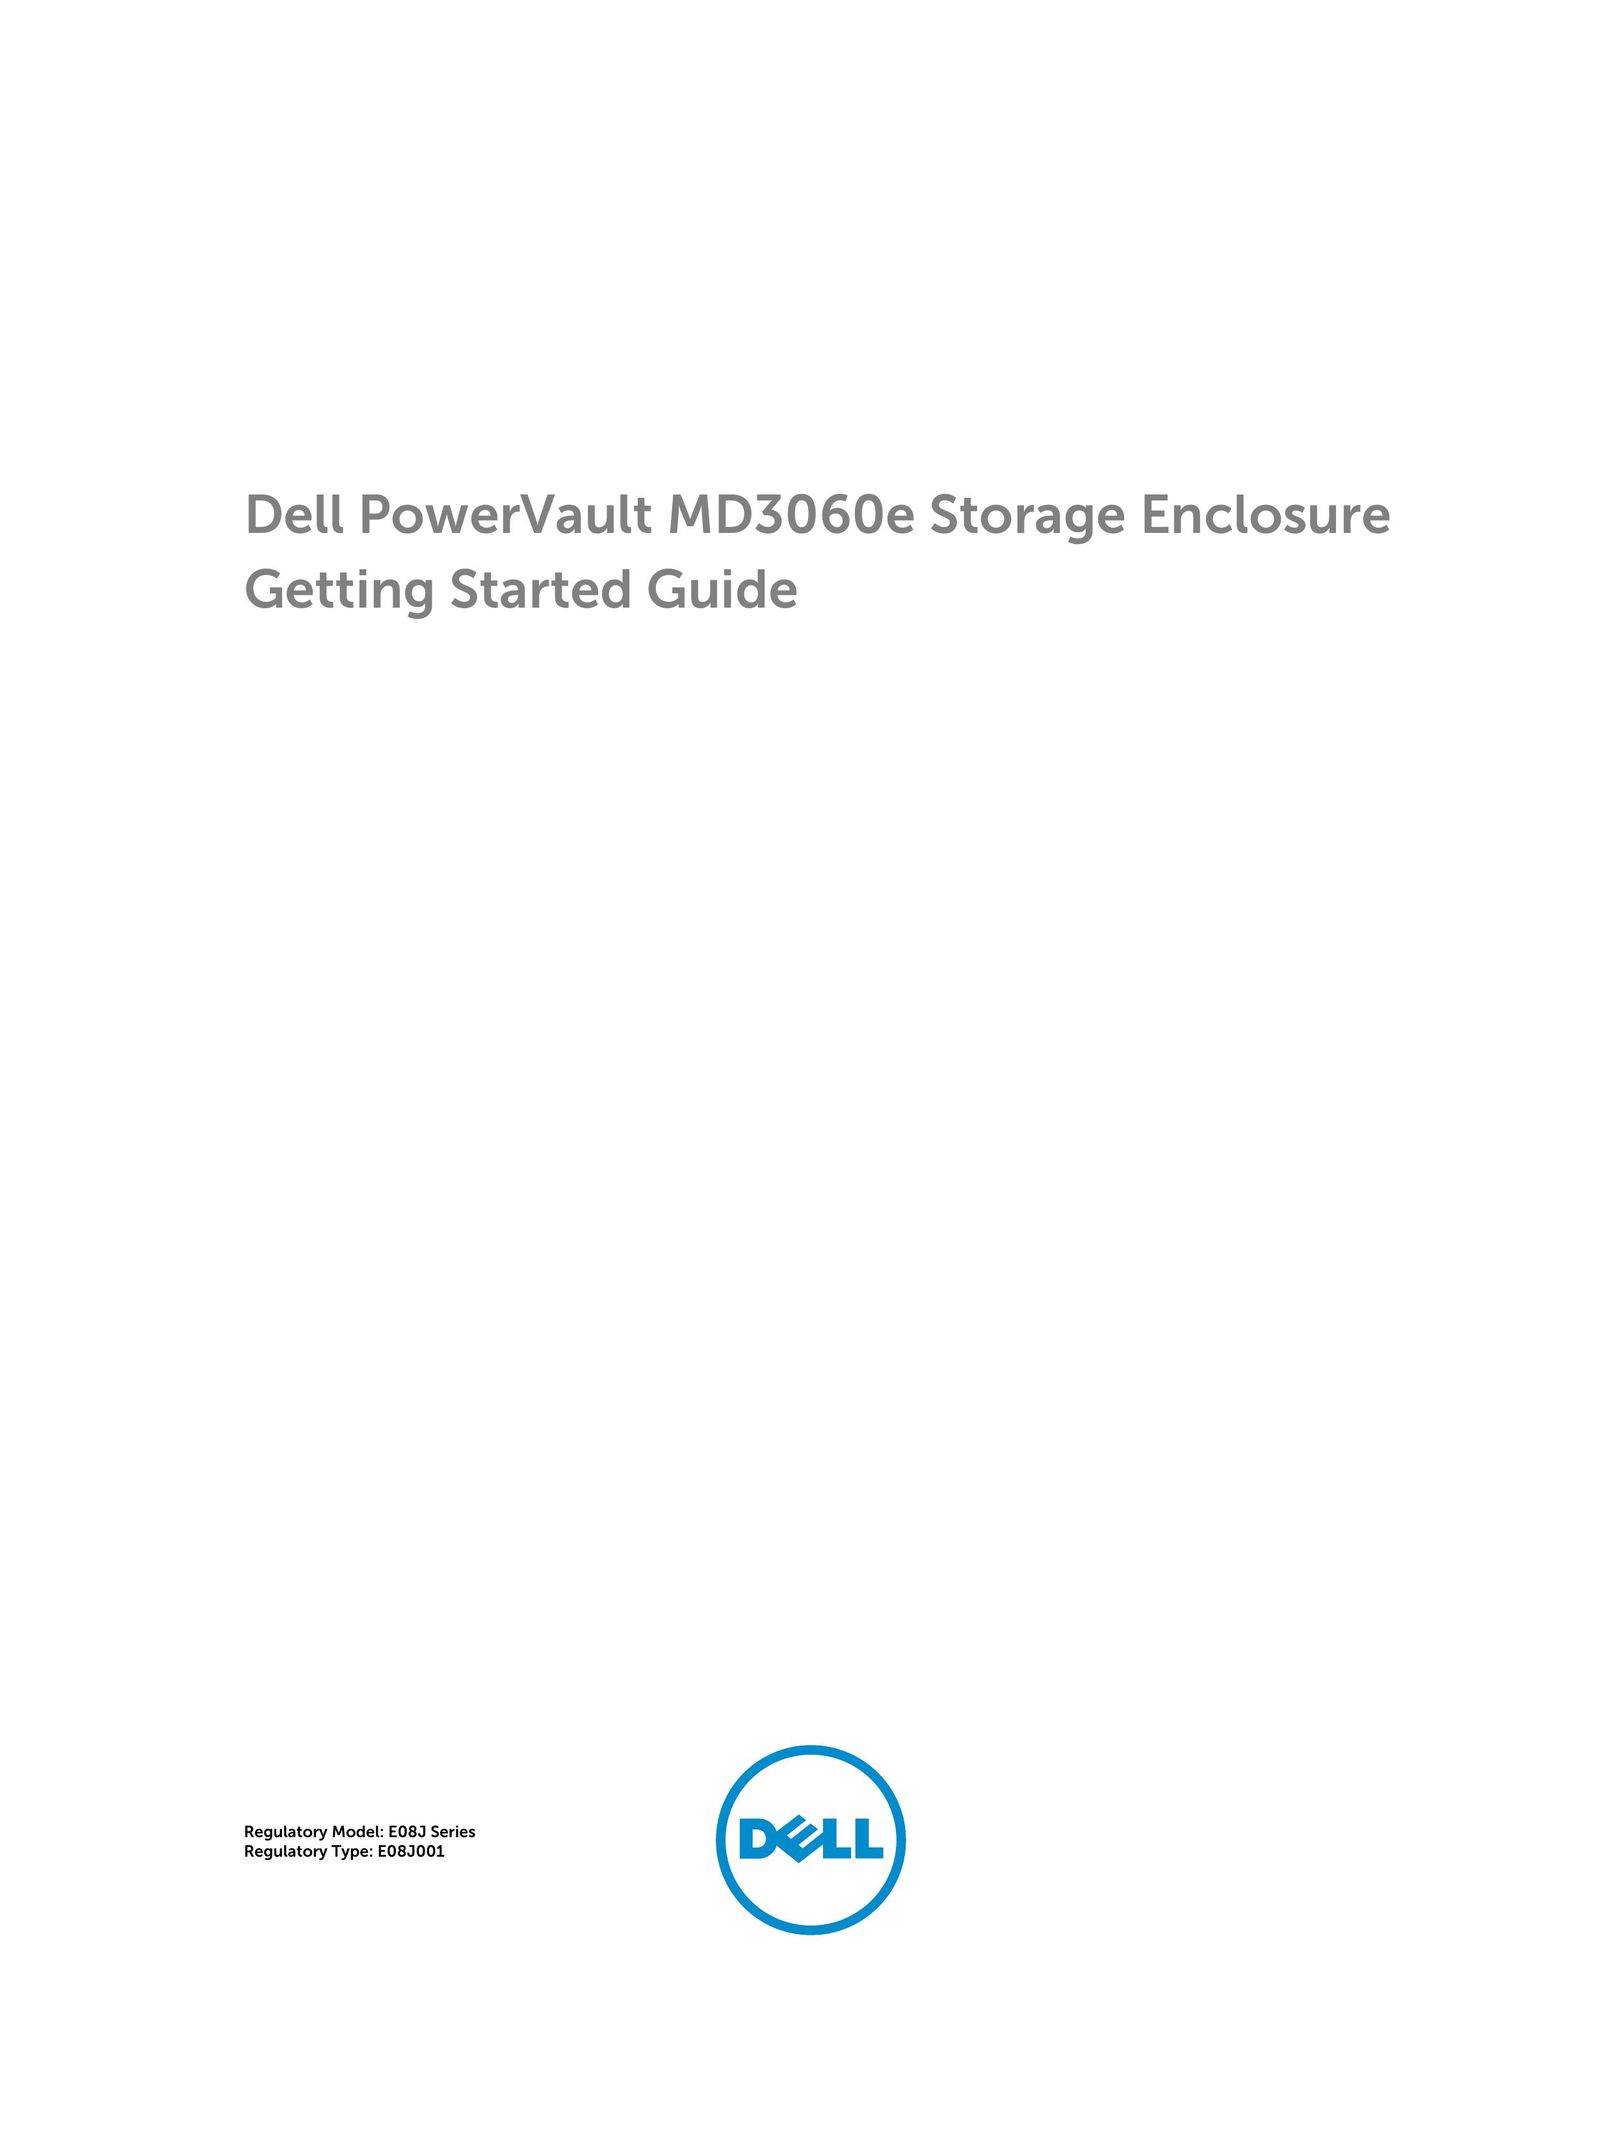 Dell E08J001 Tool Storage User Manual